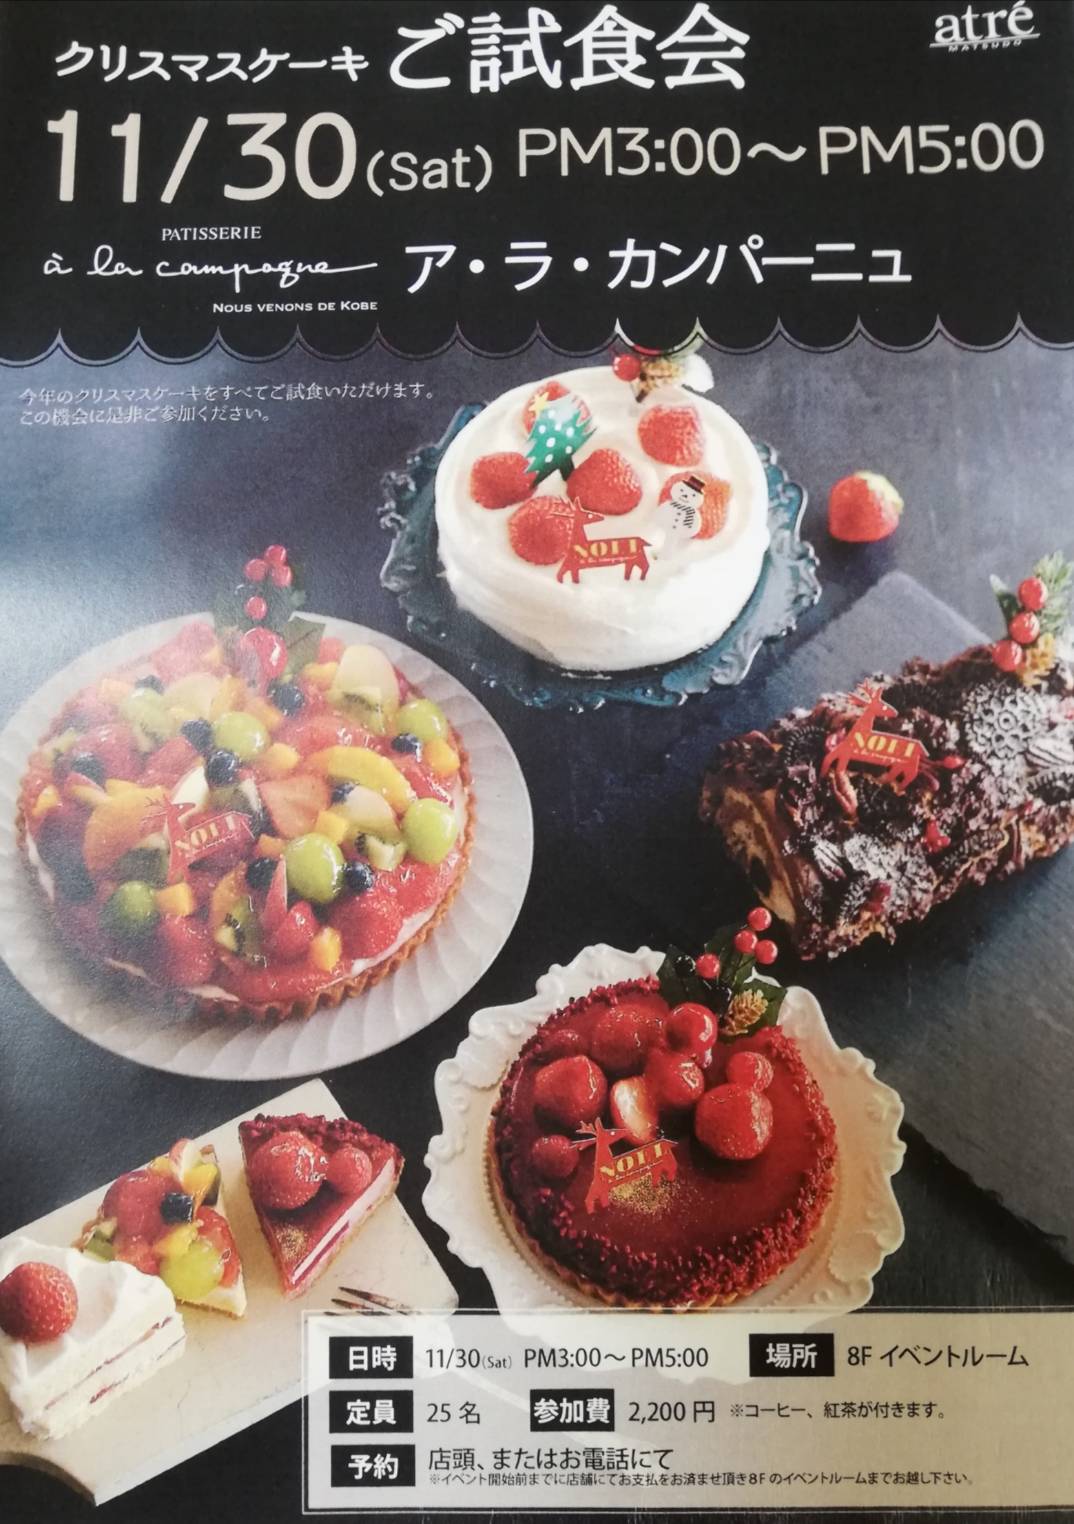 クリスマスケーキの有料試食会がアトレ松戸で30日に予定 開催概要 ア ラ カンパーニュ 松戸ロード 松戸の地域情報